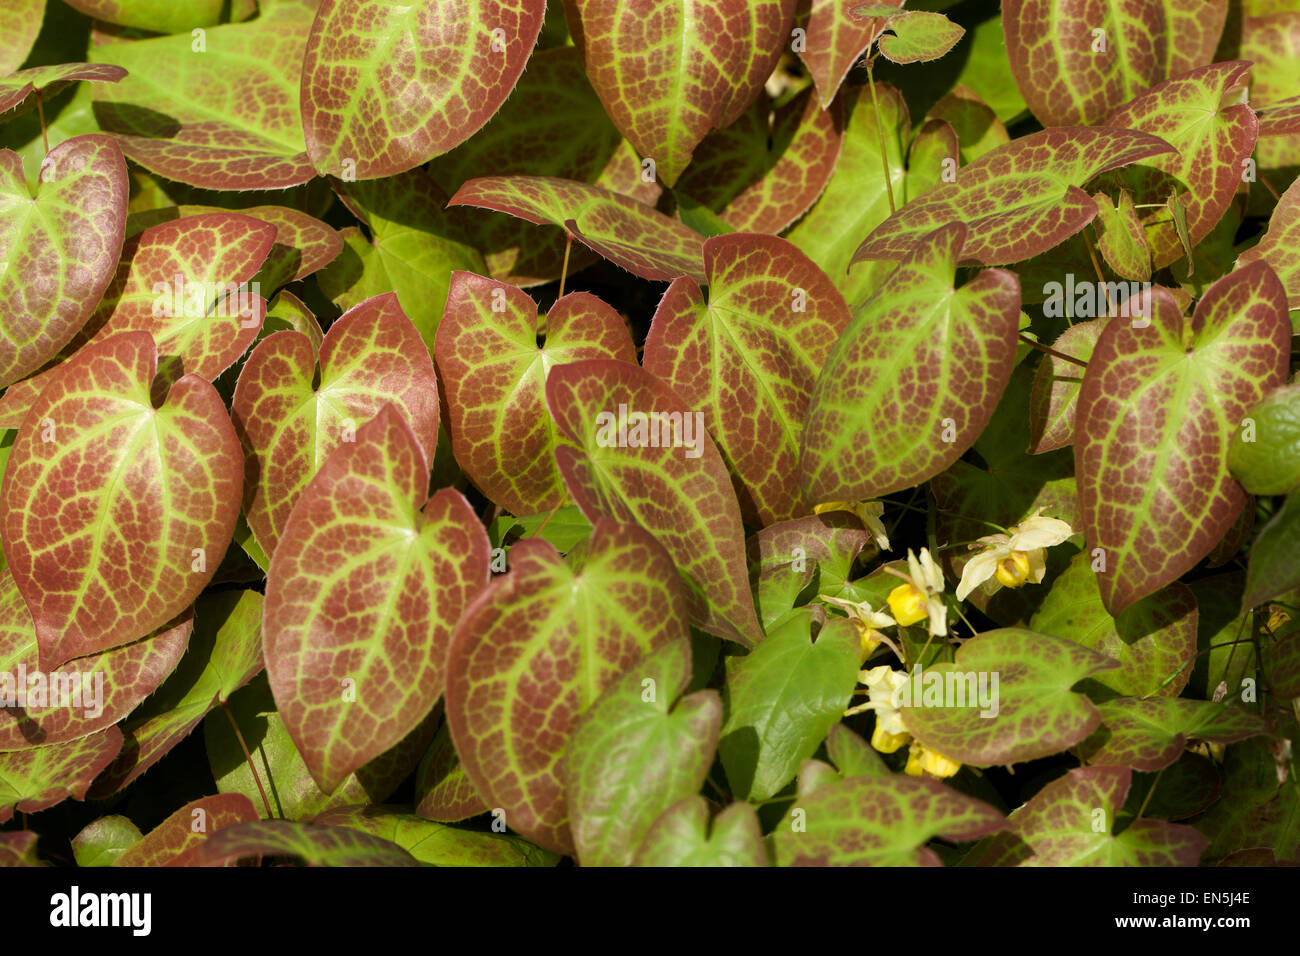 Epimedium versicolor ' Sulphureum ', leaves Barrenwort Stock Photo